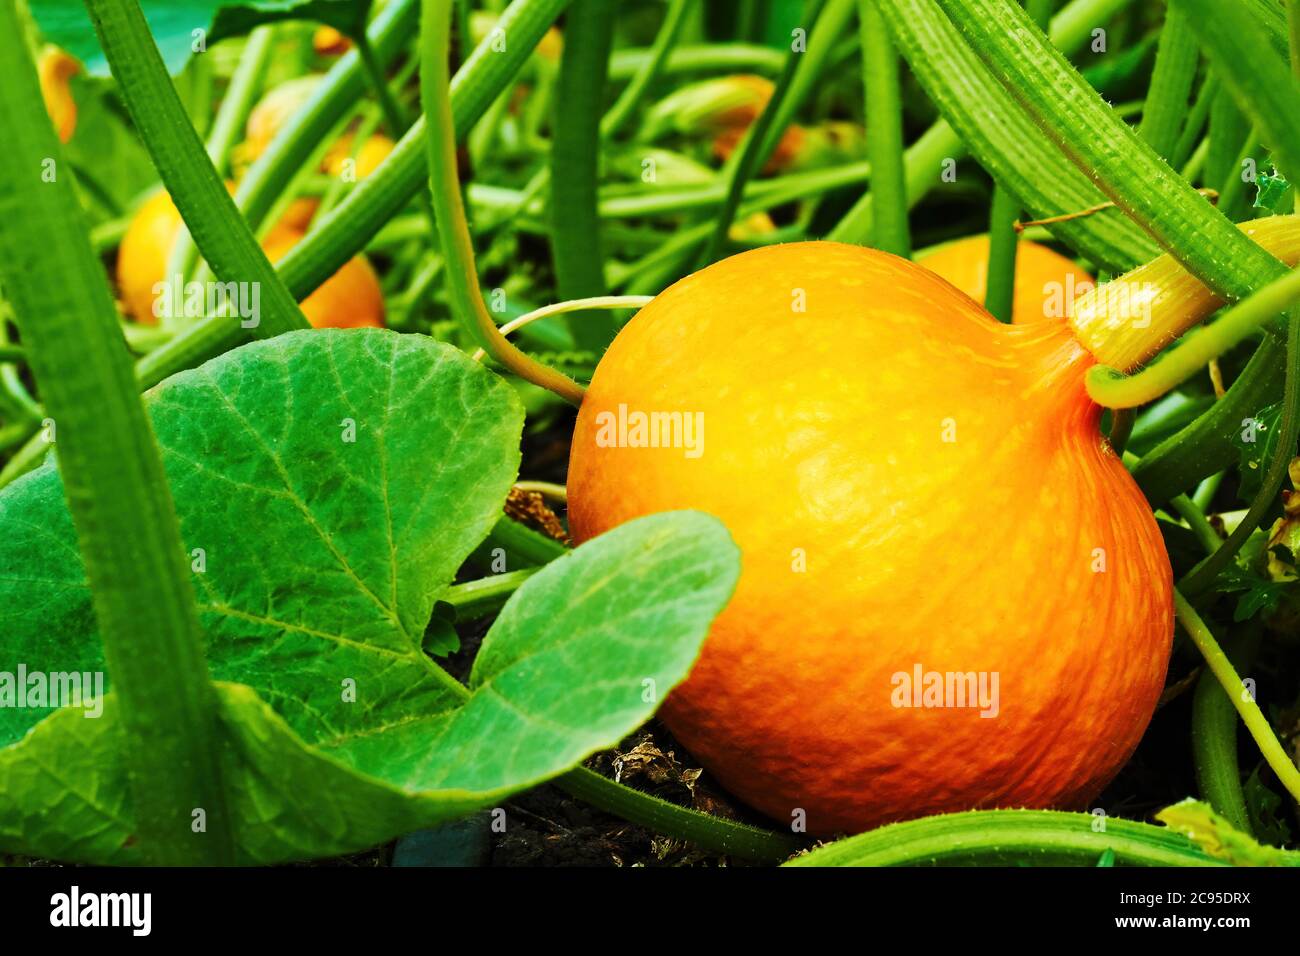 Zucca di arancia matura per Halloween che cresce nel letto da giardino. Raccolta stagionale e agricoltura. Verdure crude Foto Stock